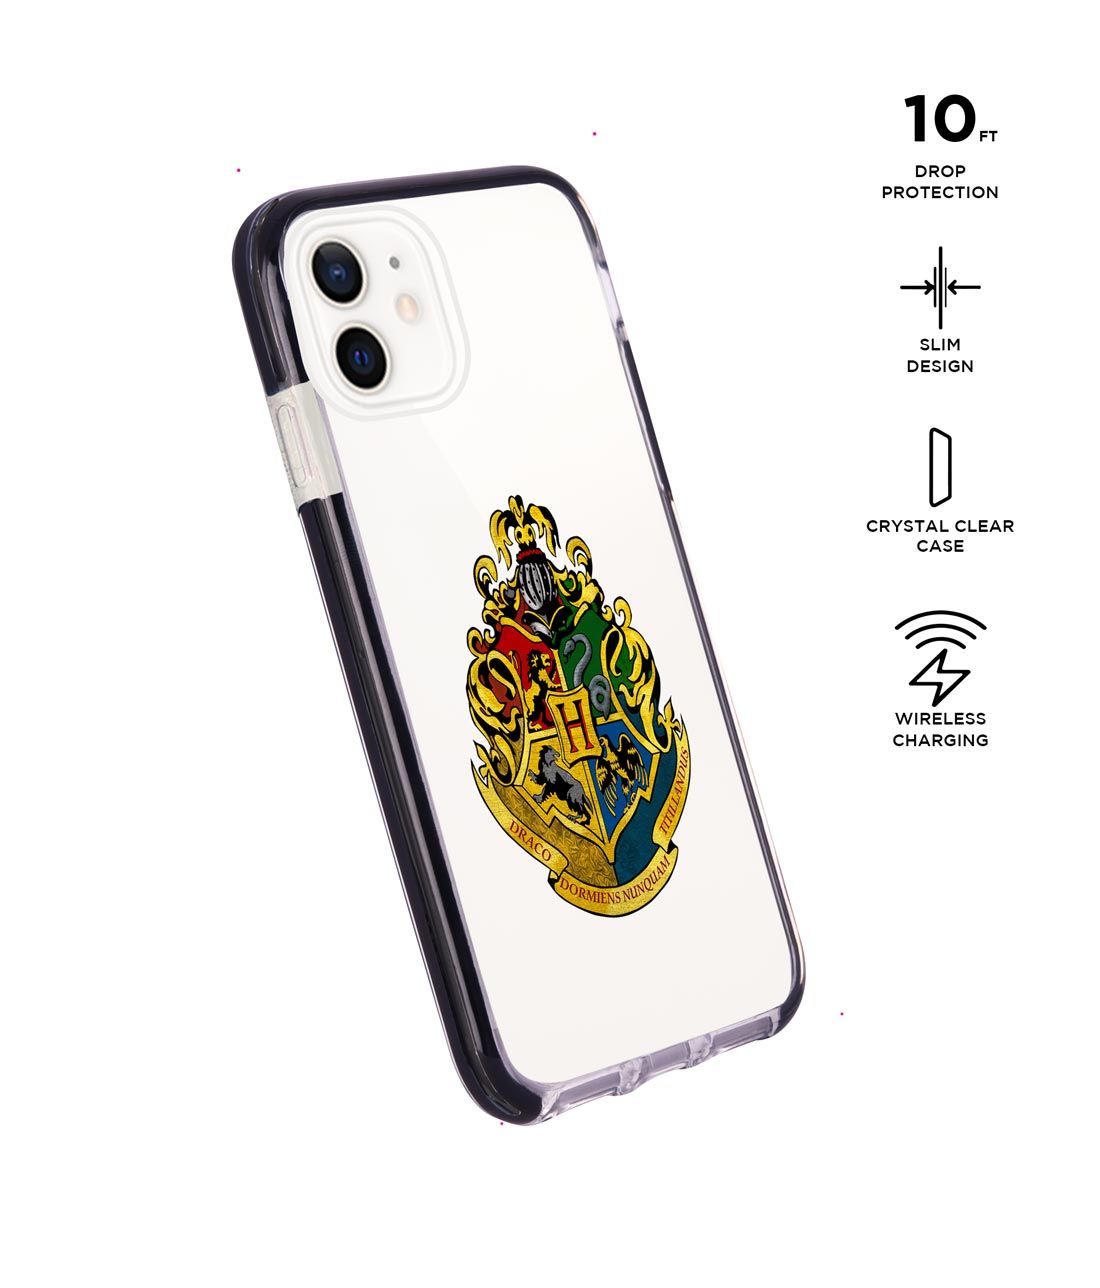 Hogwarts Sigil - Extreme Case for iPhone 12